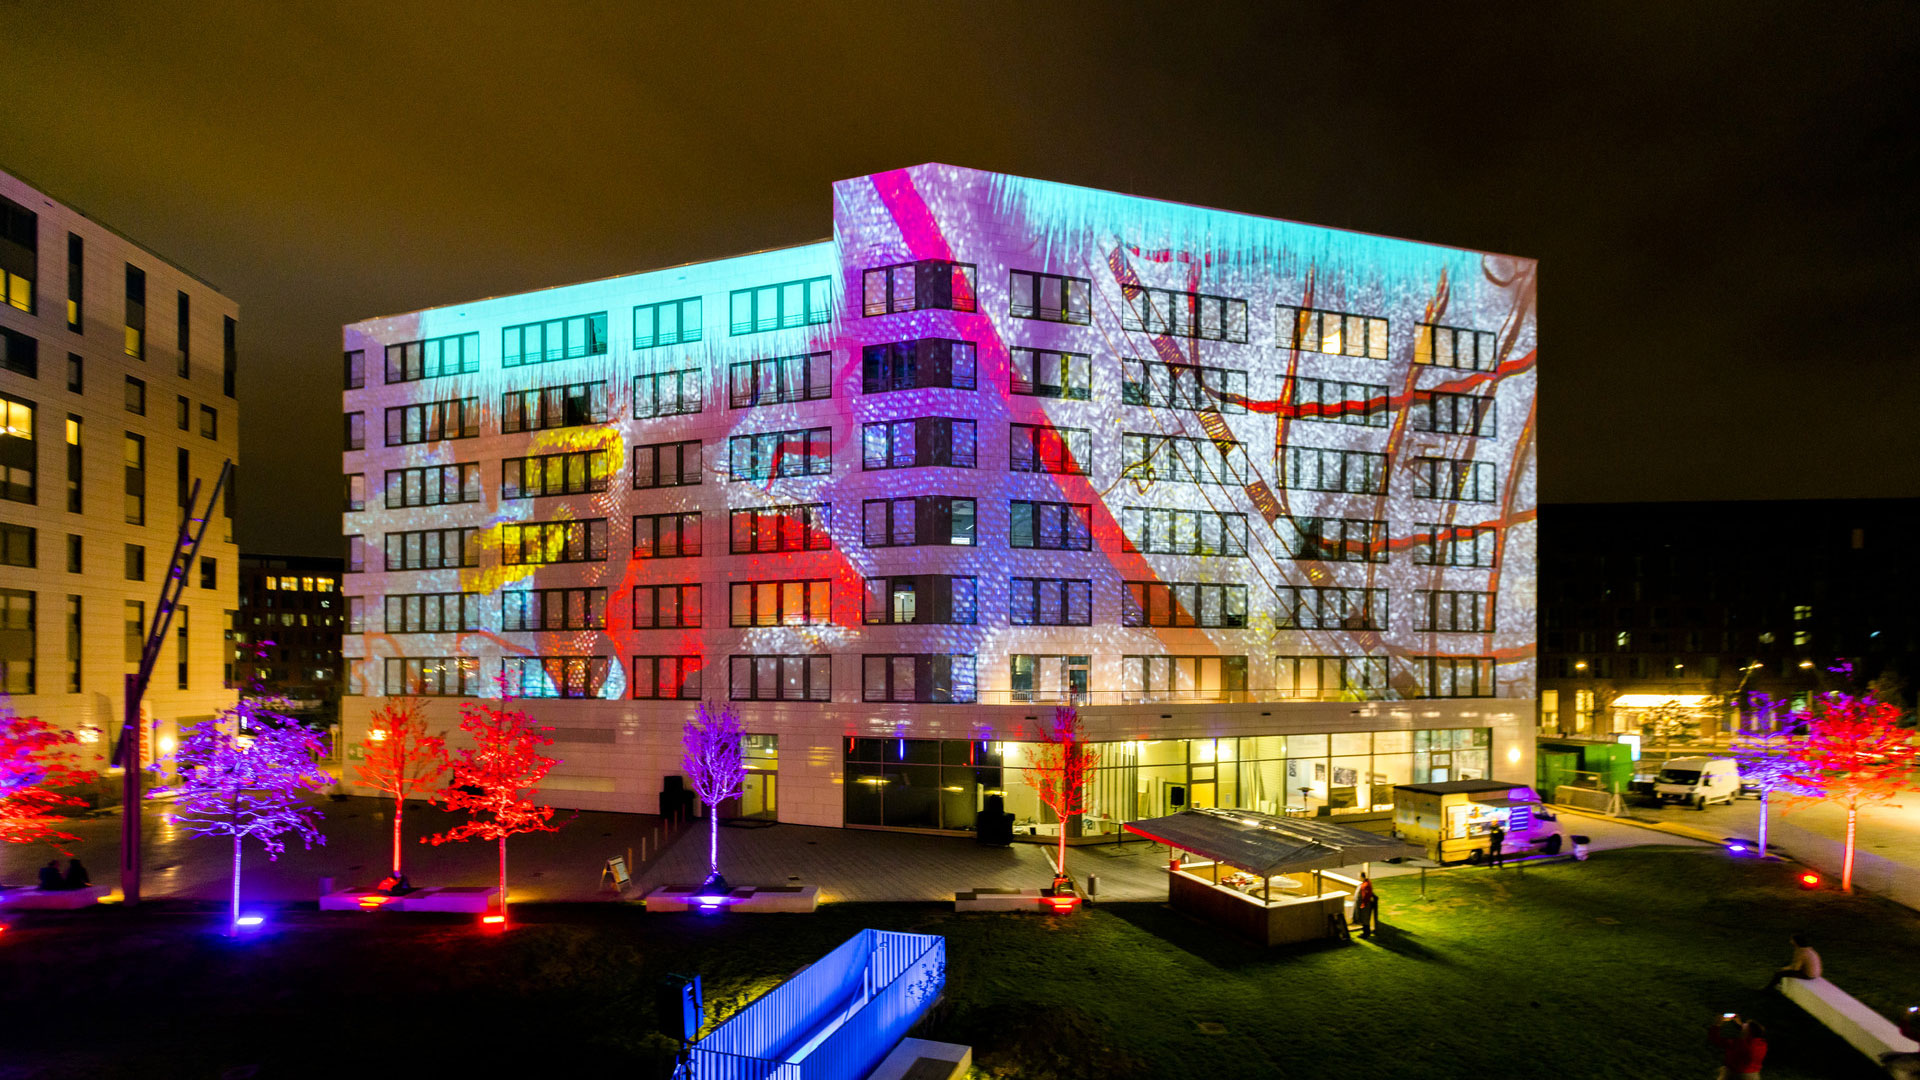 Cartographie vidéo artistique pour l'ouverture des "Quartiers intelligents" dans la HafenCity de Hambourg.